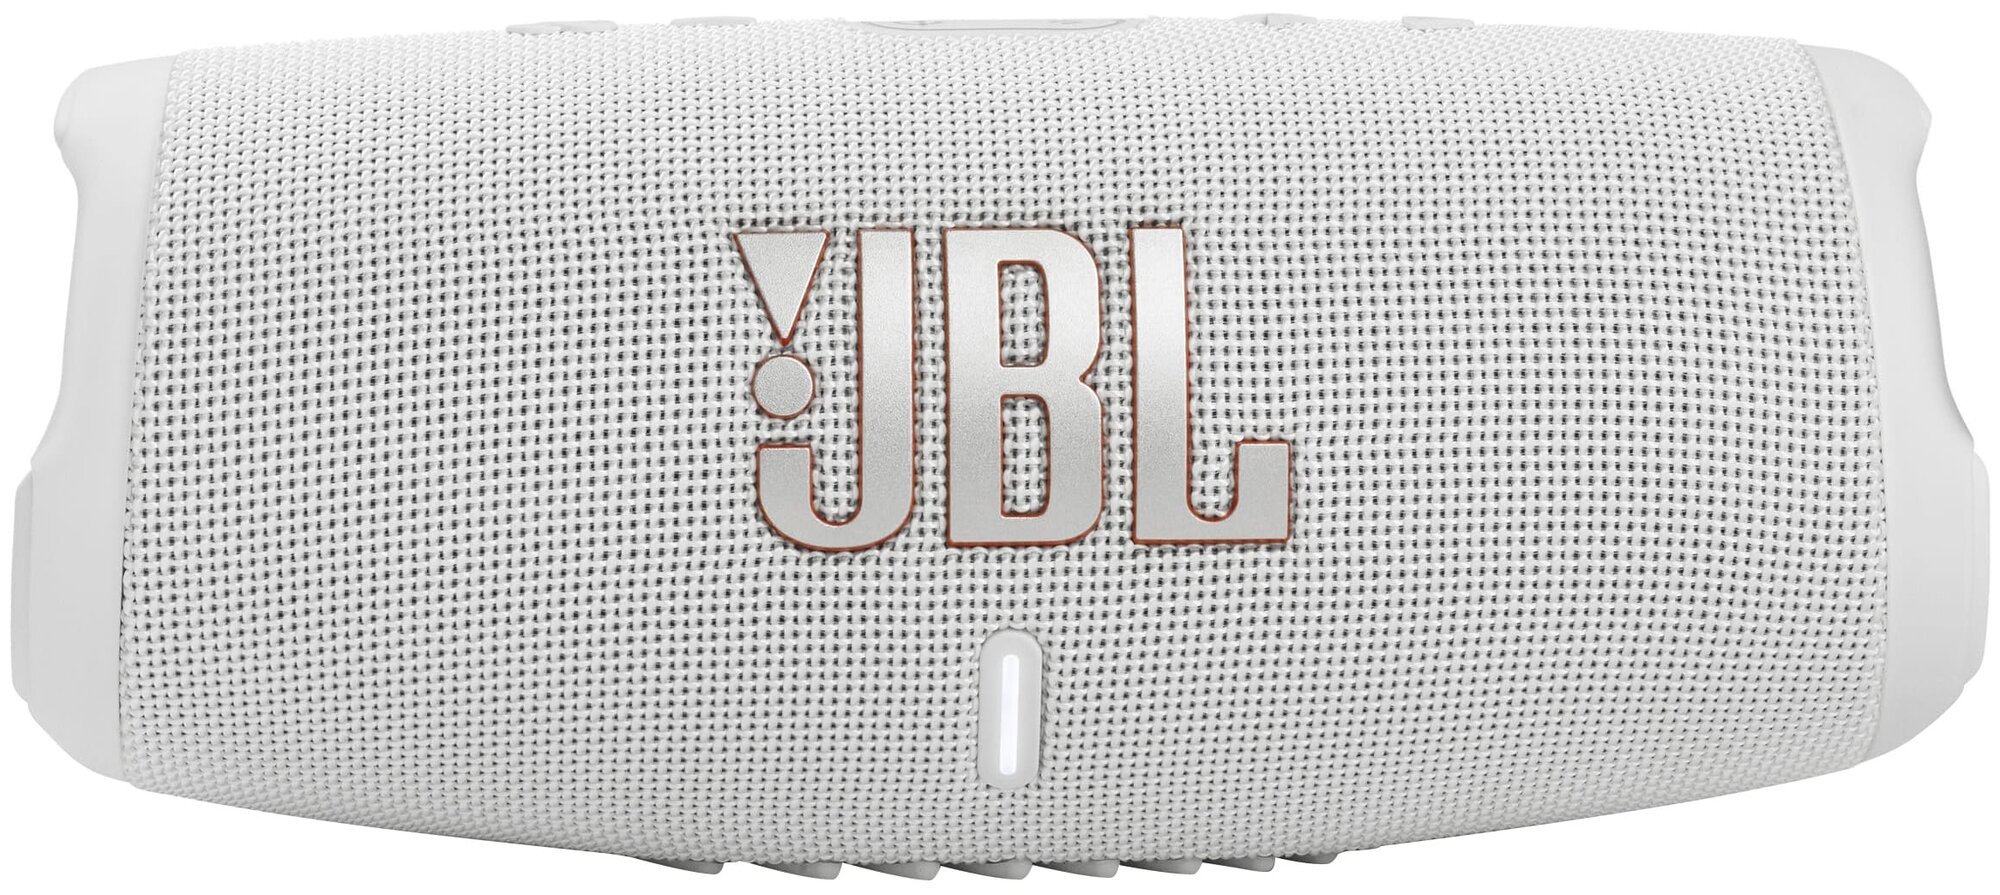 Портативная акустическая система JBL Charge 5 белая Jblcharge5wht .